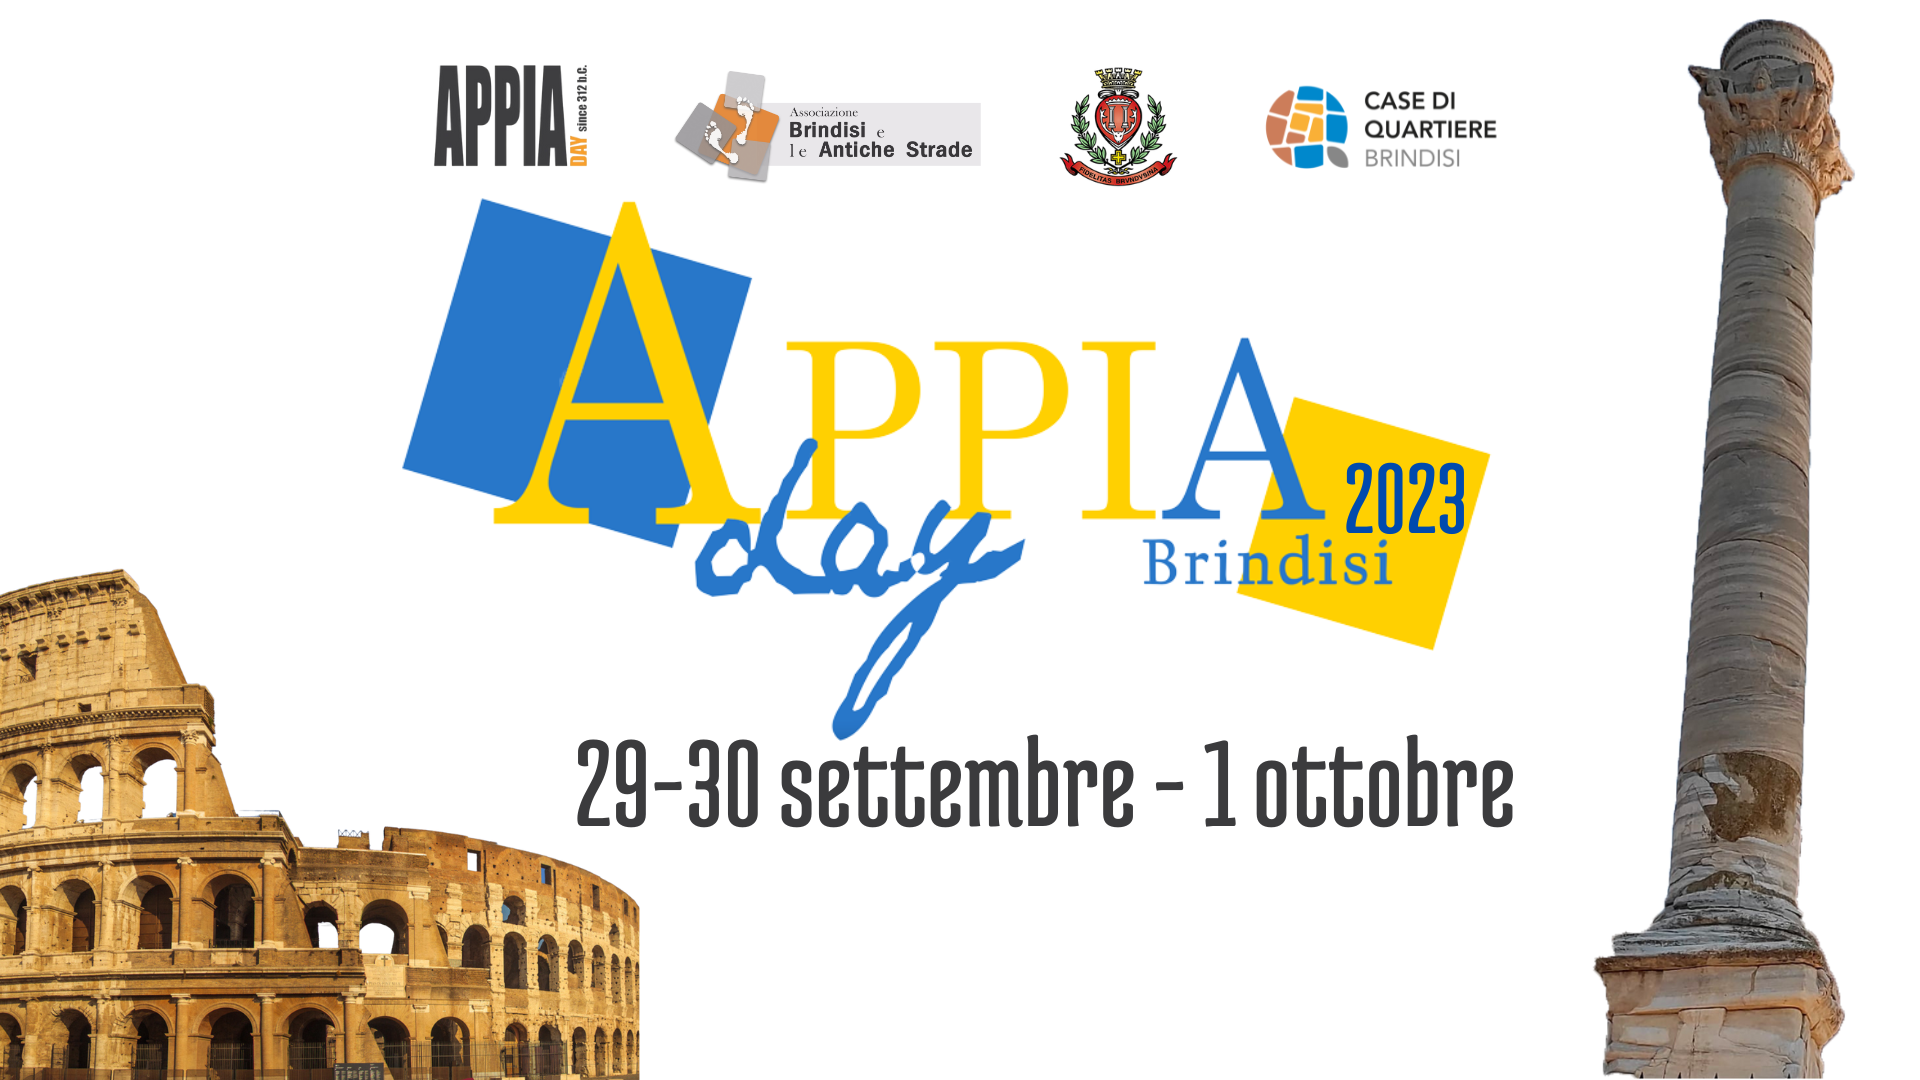 Brindisi: AppiaDay2023. Le iniziative 29-30 settembre 1 ottobre 2023